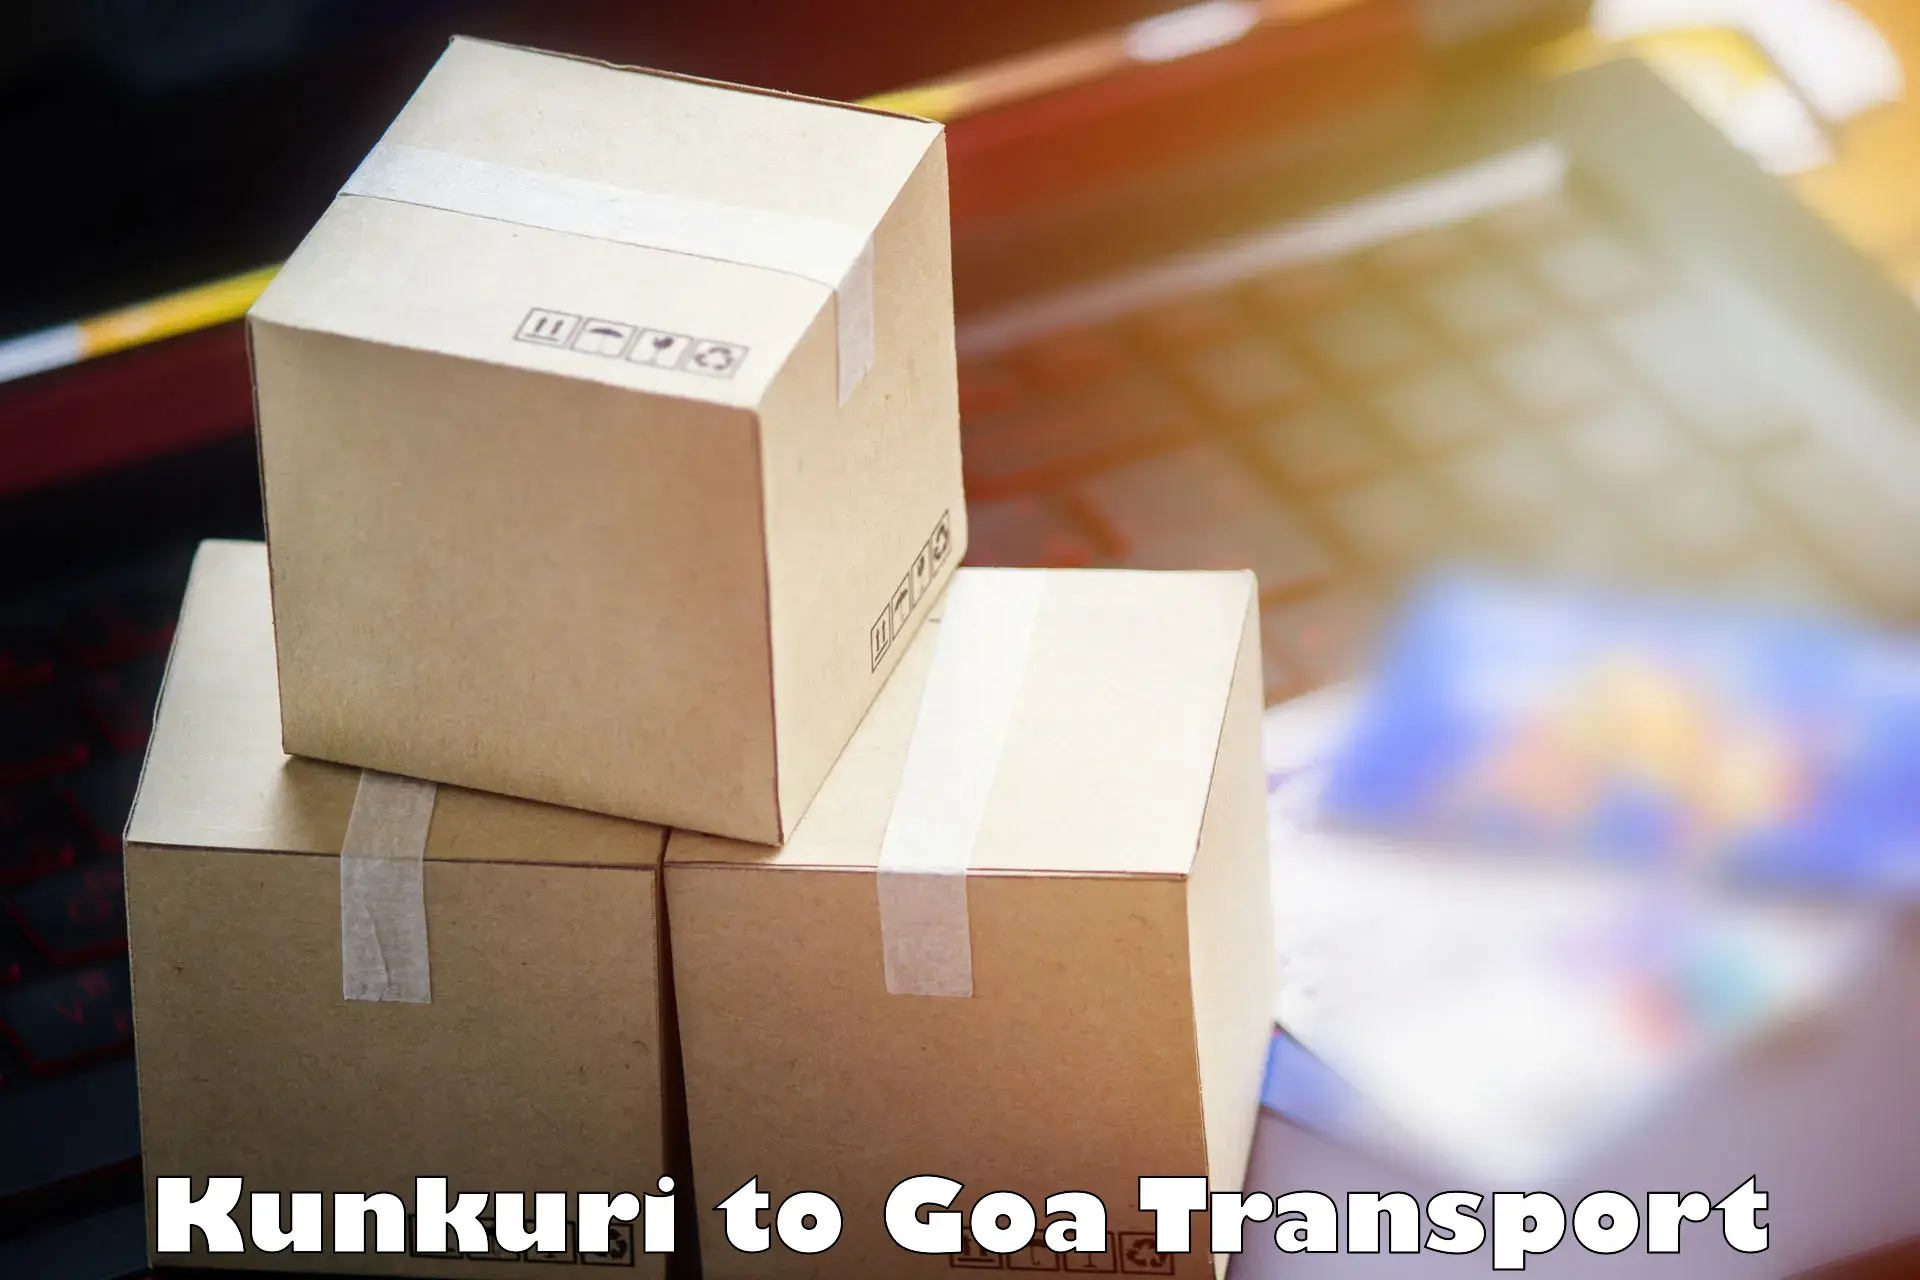 Daily transport service Kunkuri to Panaji